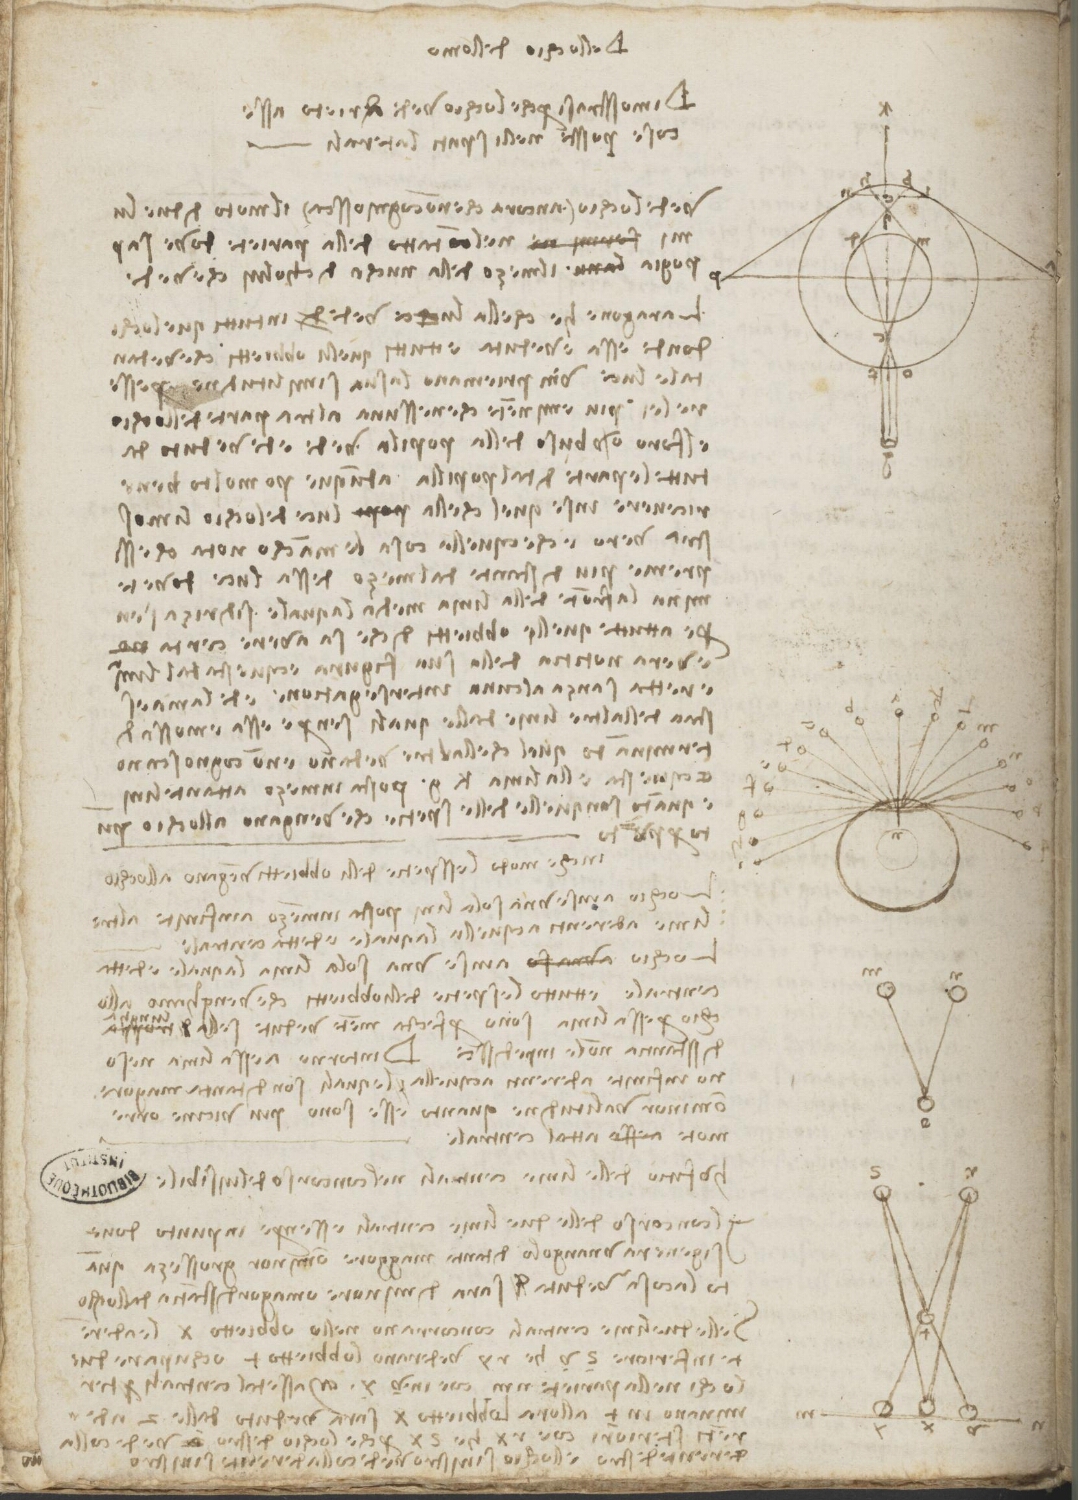 Ms 2175 (manuscrit D), f. 8v : études sur la vision et la façon dont l'oeil perçoit les images.